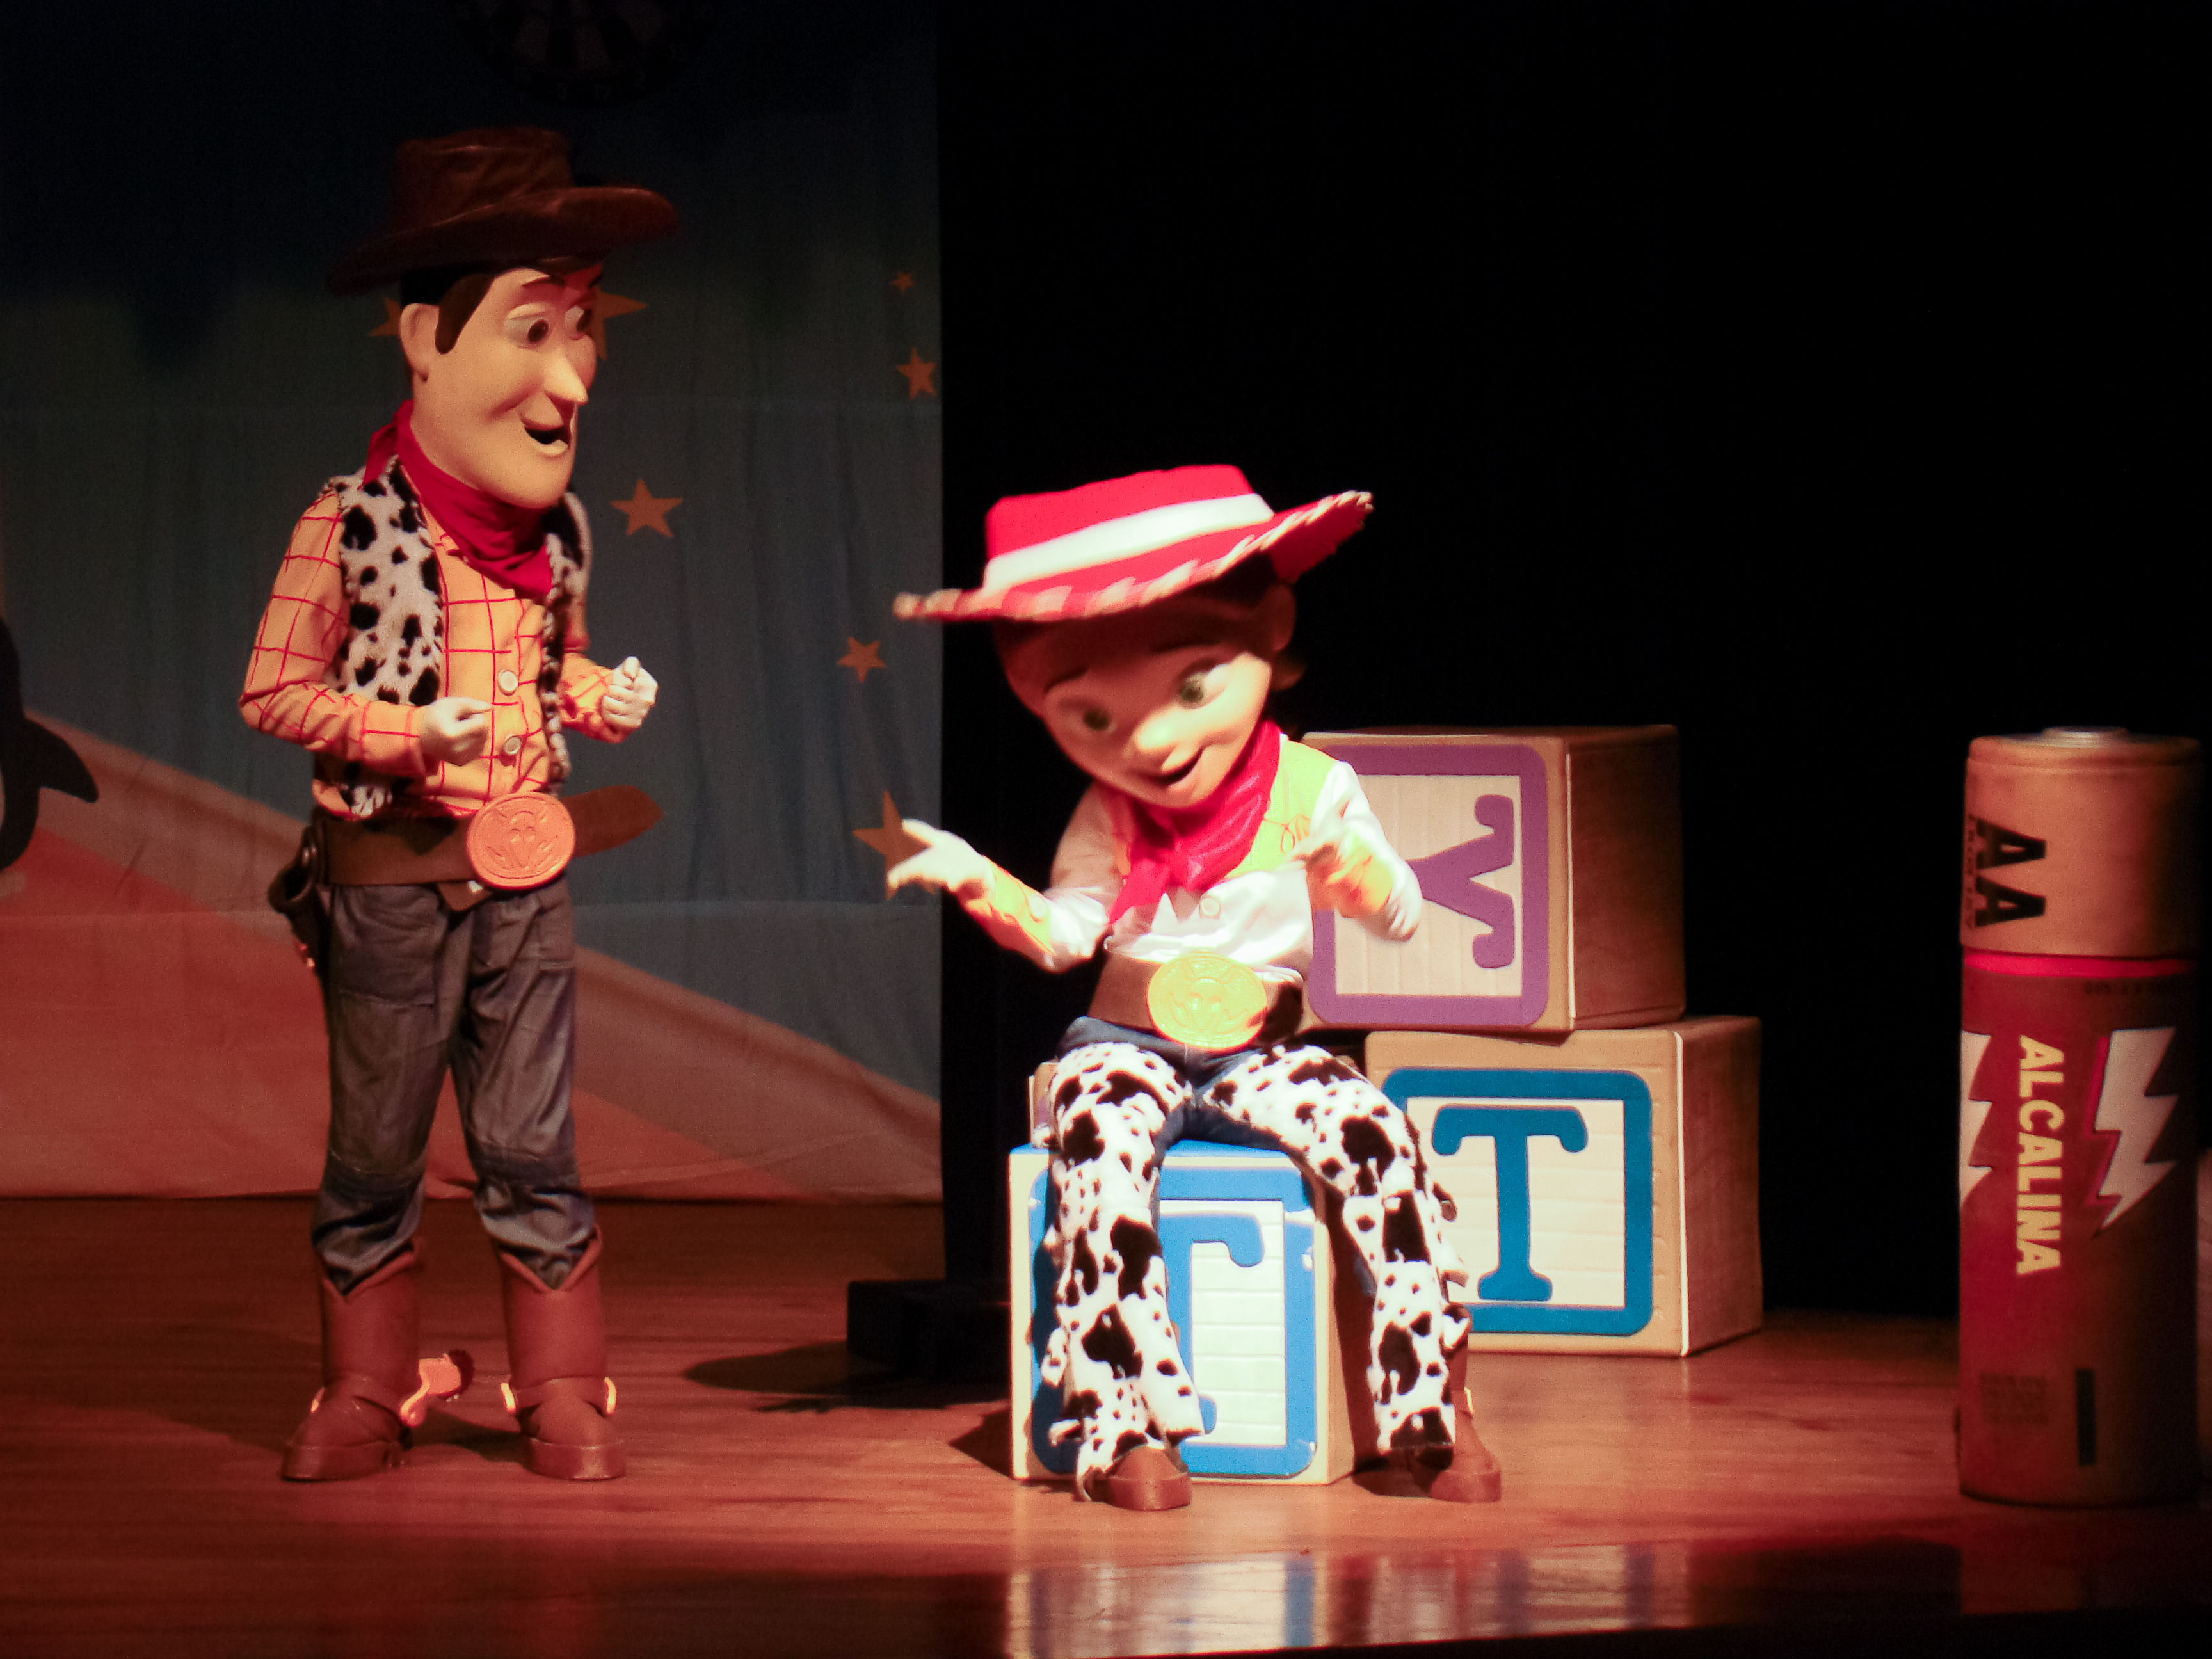 Arte: Estória De Brinquedo – Incrível Mundo de Toy Story